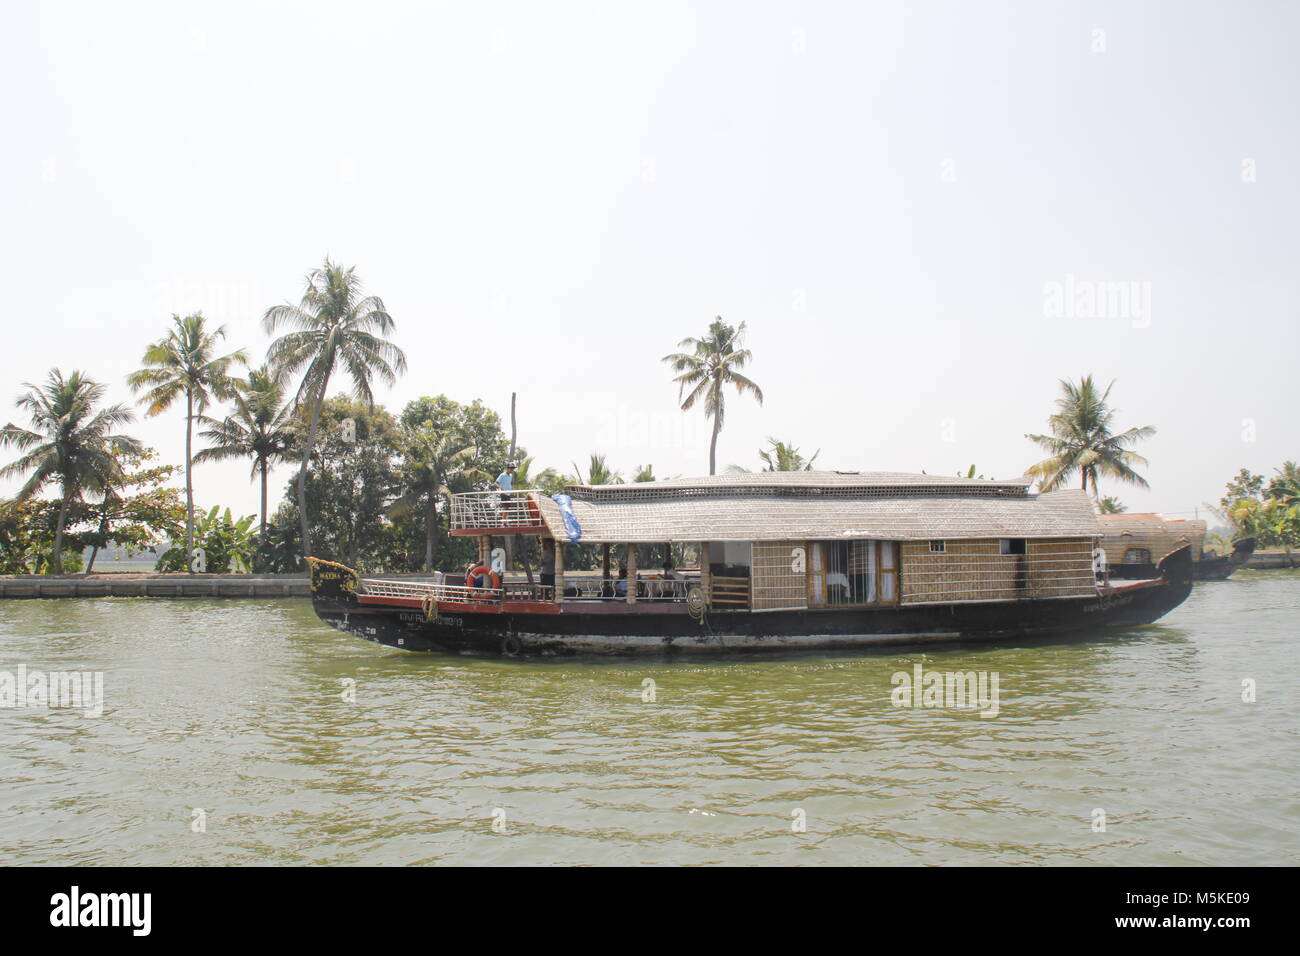 Un bateau dans les eaux troubles de Alleppy, Kerala, Inde Banque D'Images